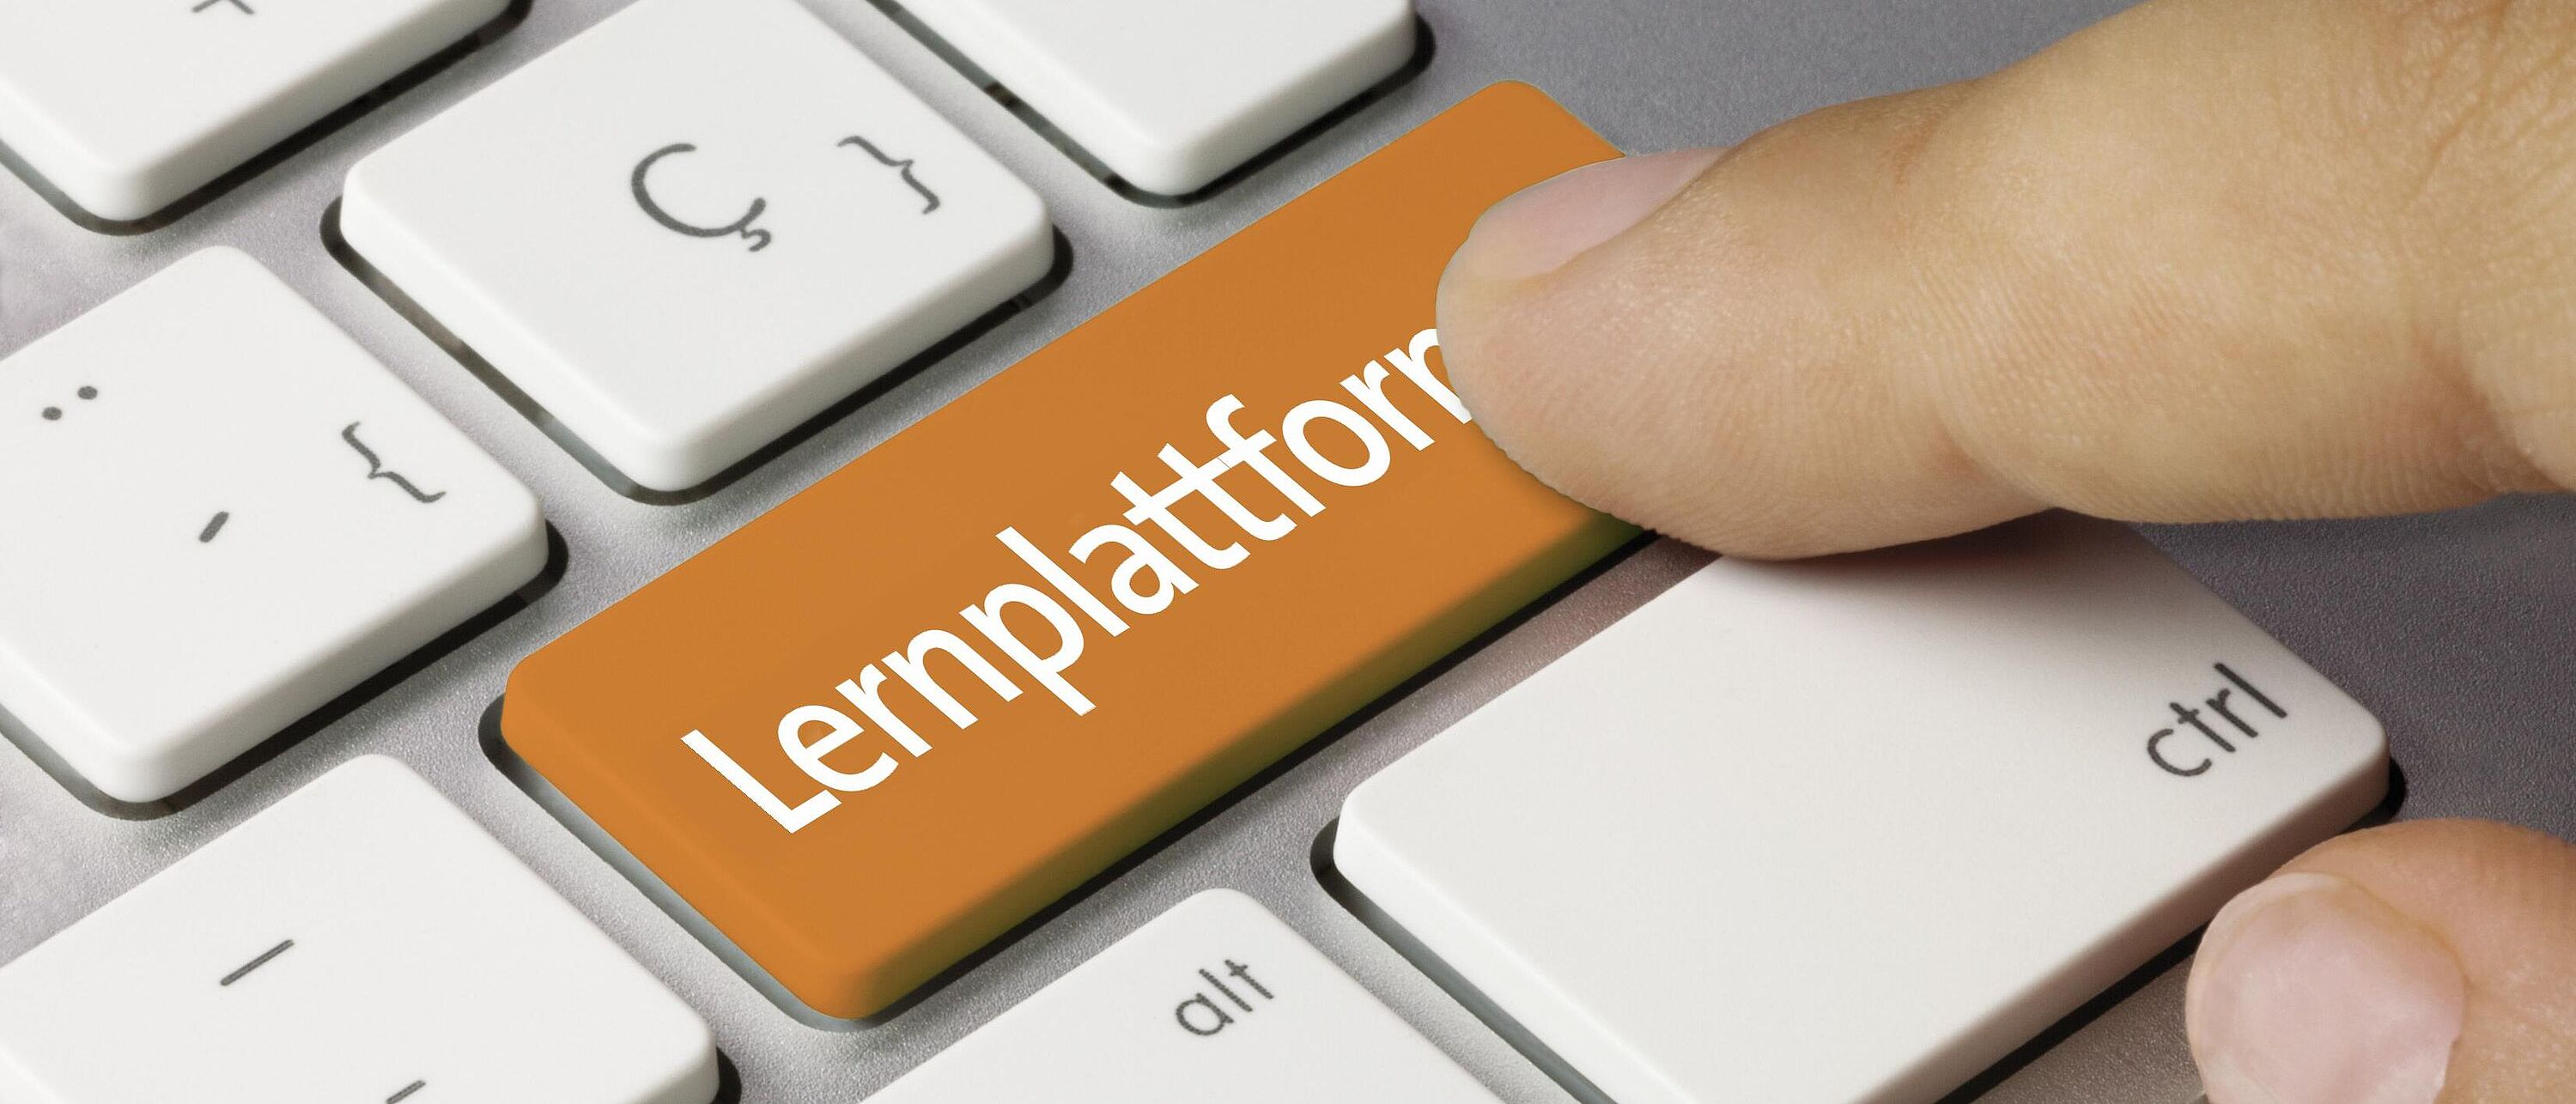 Macroaufnahme einer Tastatur, auf der Eingabetaste der weiße Schriftzug auf orangenen Hintergrund \"Lernplattform\". Darüber ein Zeigefinger der die Taste drücken will.